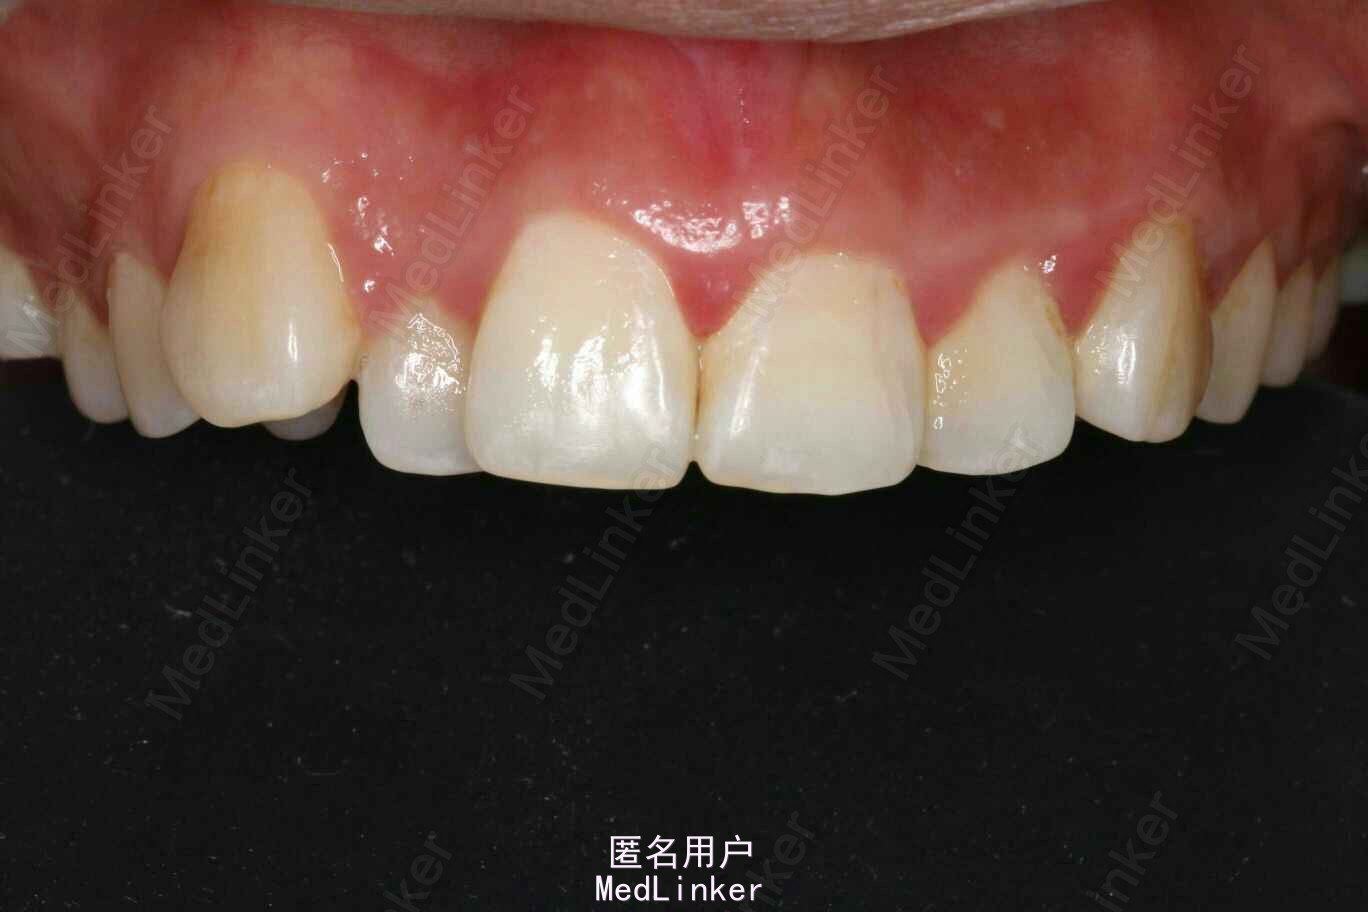 图3-52 下颌尖牙-基础医学-医学